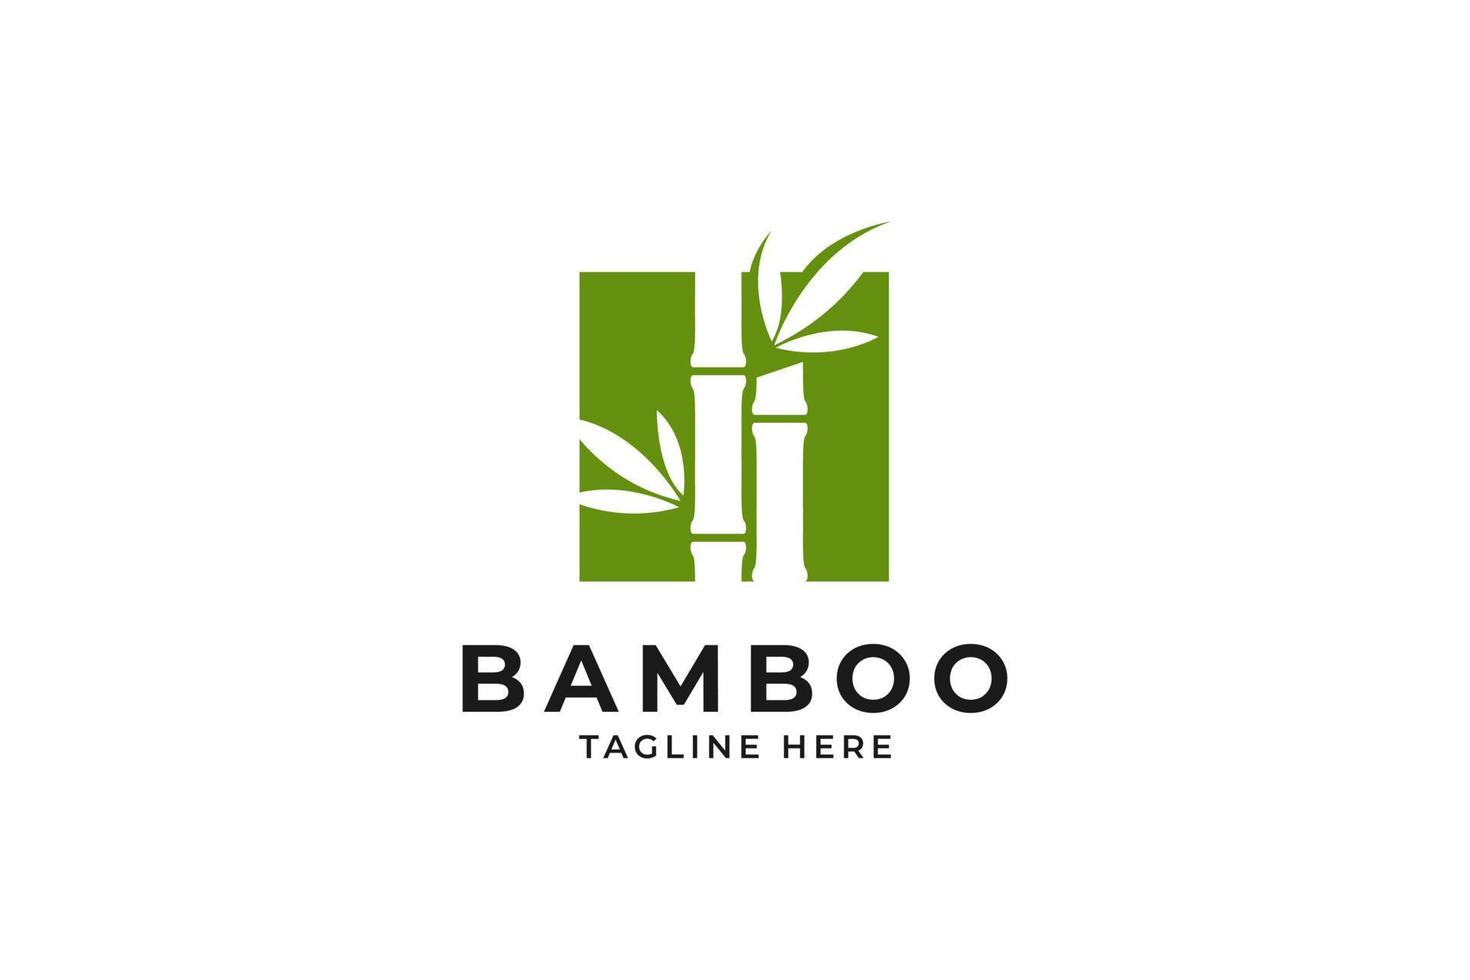 Bamboo logo design vector template